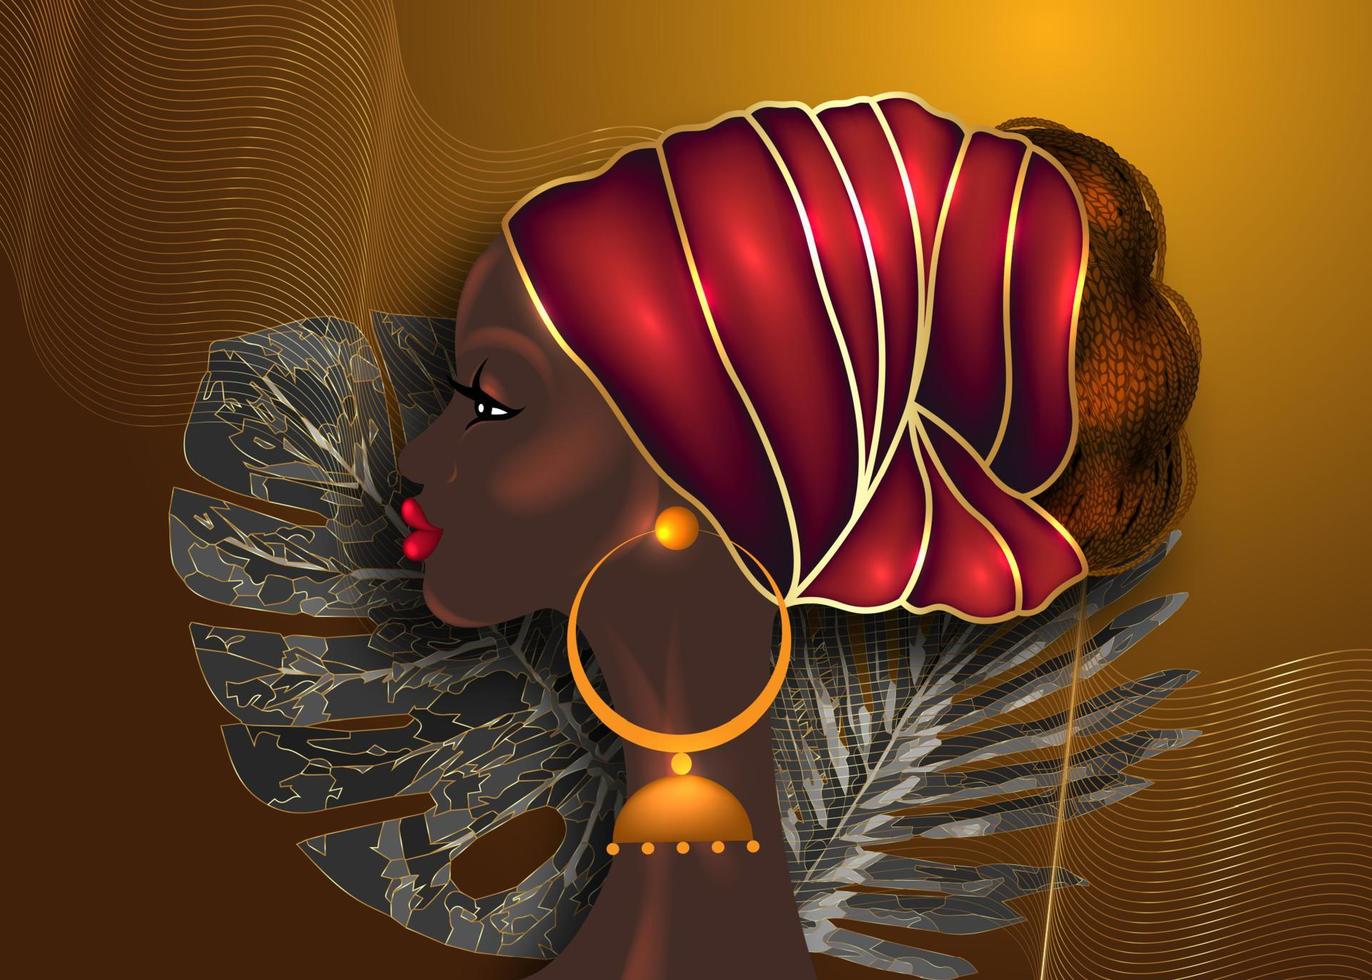 Afro-Frisur, schöne Porträt-Afrikanerin in Wachsdruckgewebe roter Turban, Diversity-Konzept. schwarze Königin, ethnische Kopfbedeckung für Afro-Zöpfe und verworrenes lockiges Haar. Vektor isoliert brauner Hintergrund